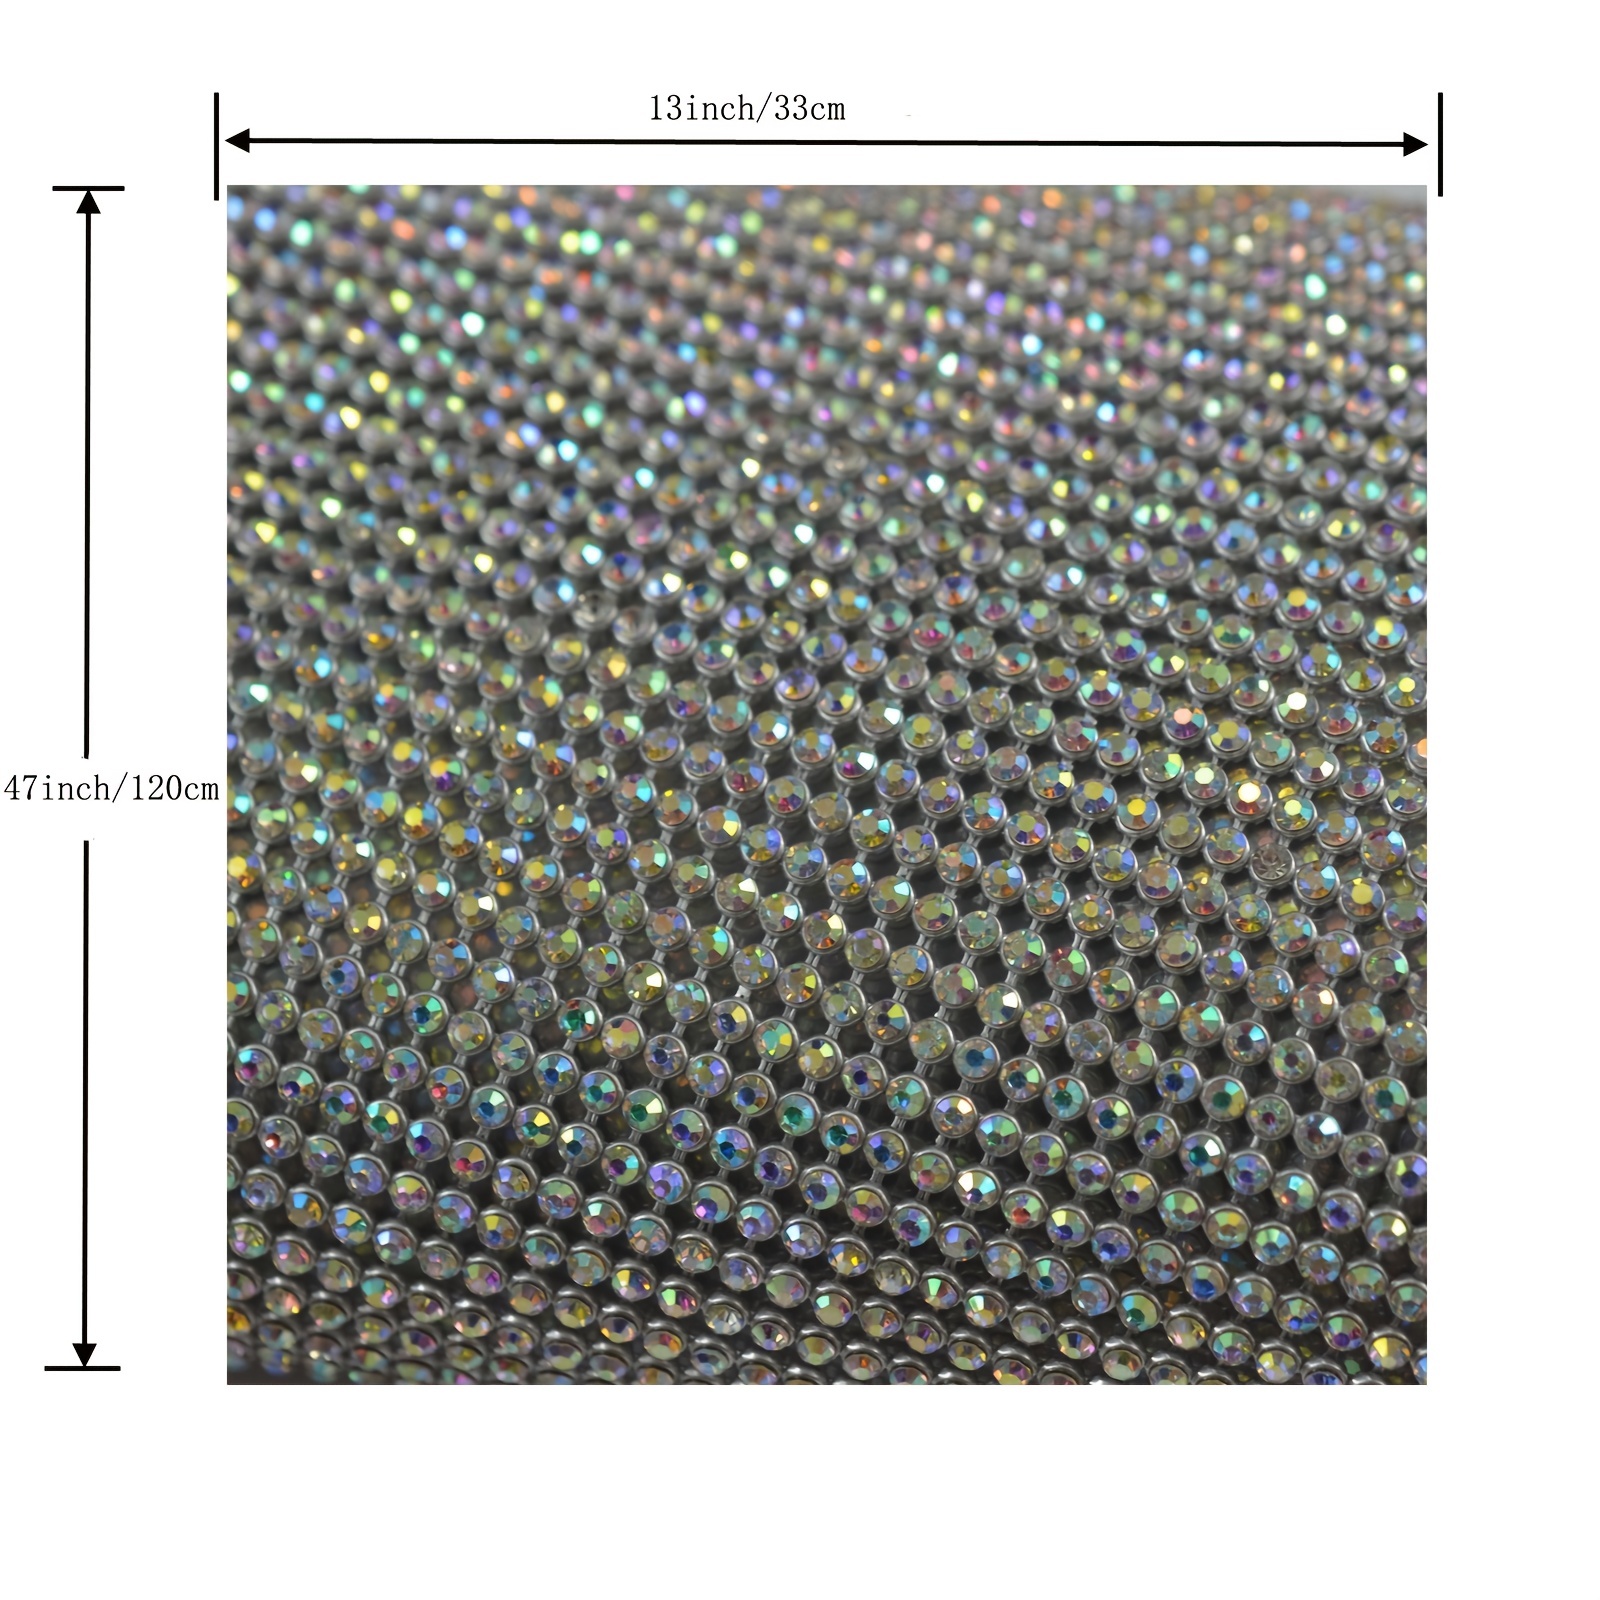 Hotfix 5mm Rhinestones in AB Crystal by ThreadNanny